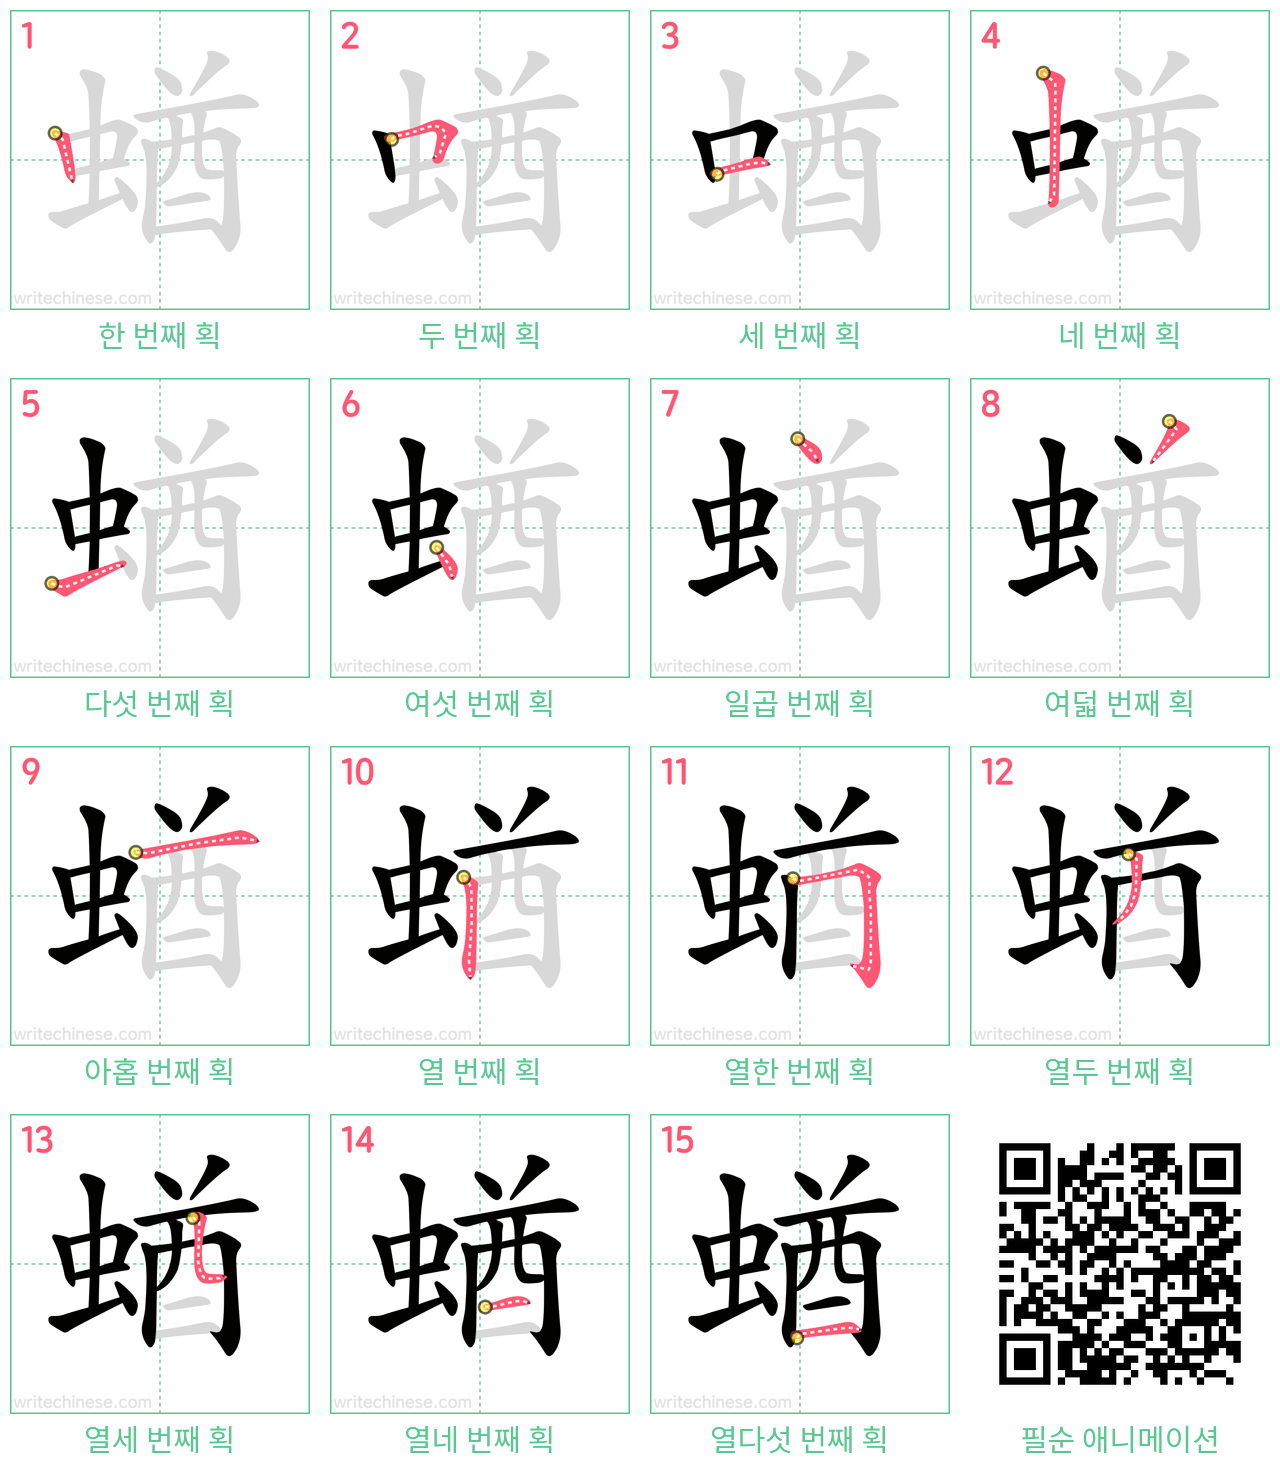 蝤 step-by-step stroke order diagrams